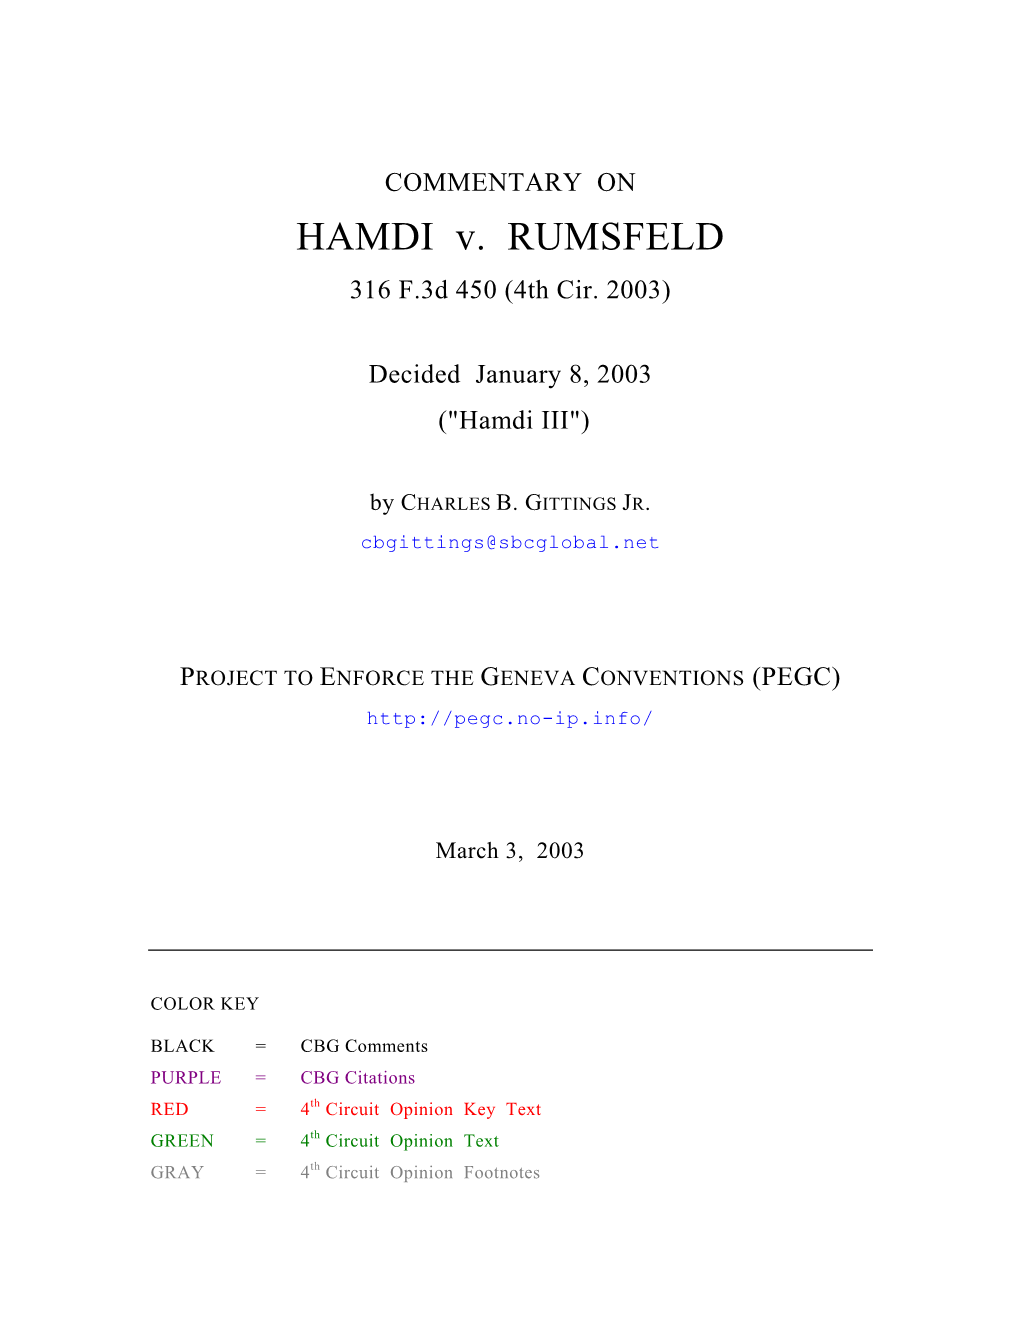 COMMENTARY on HAMDI V. RUMSFELD 316 F.3D 450 (4Th Cir